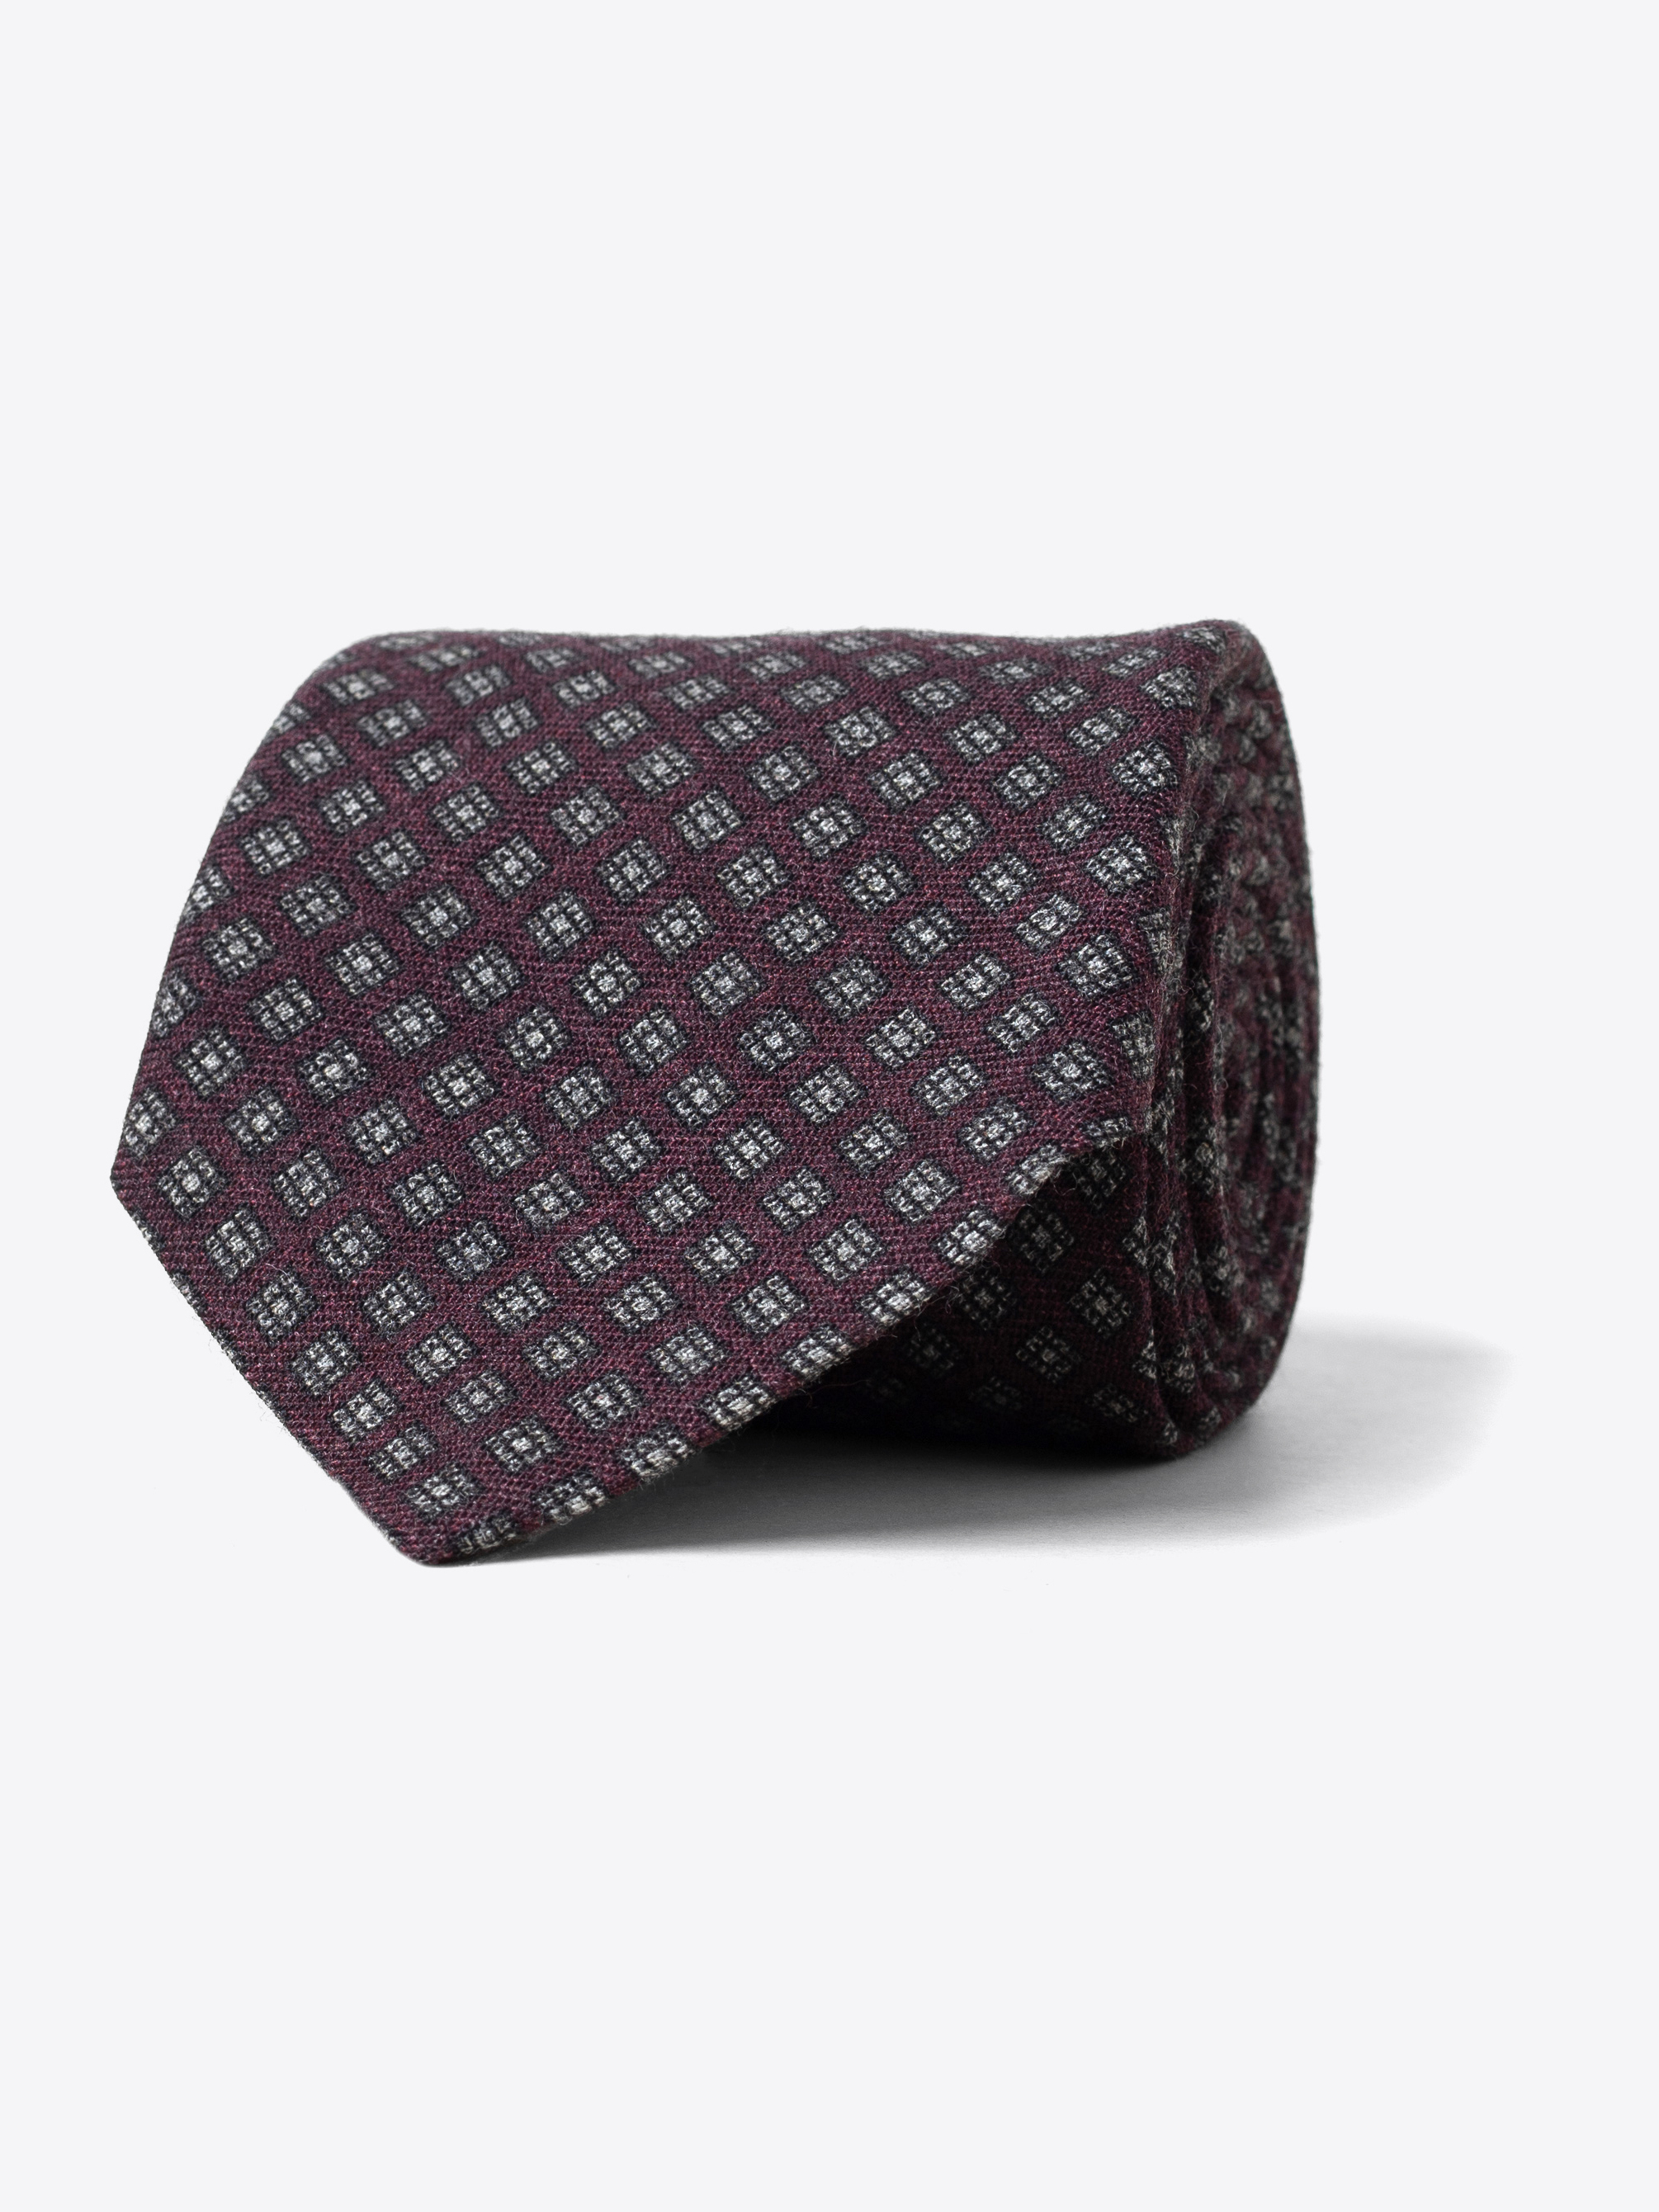 Zoom Image of Scarlet and Grey Foulard Wool Tie